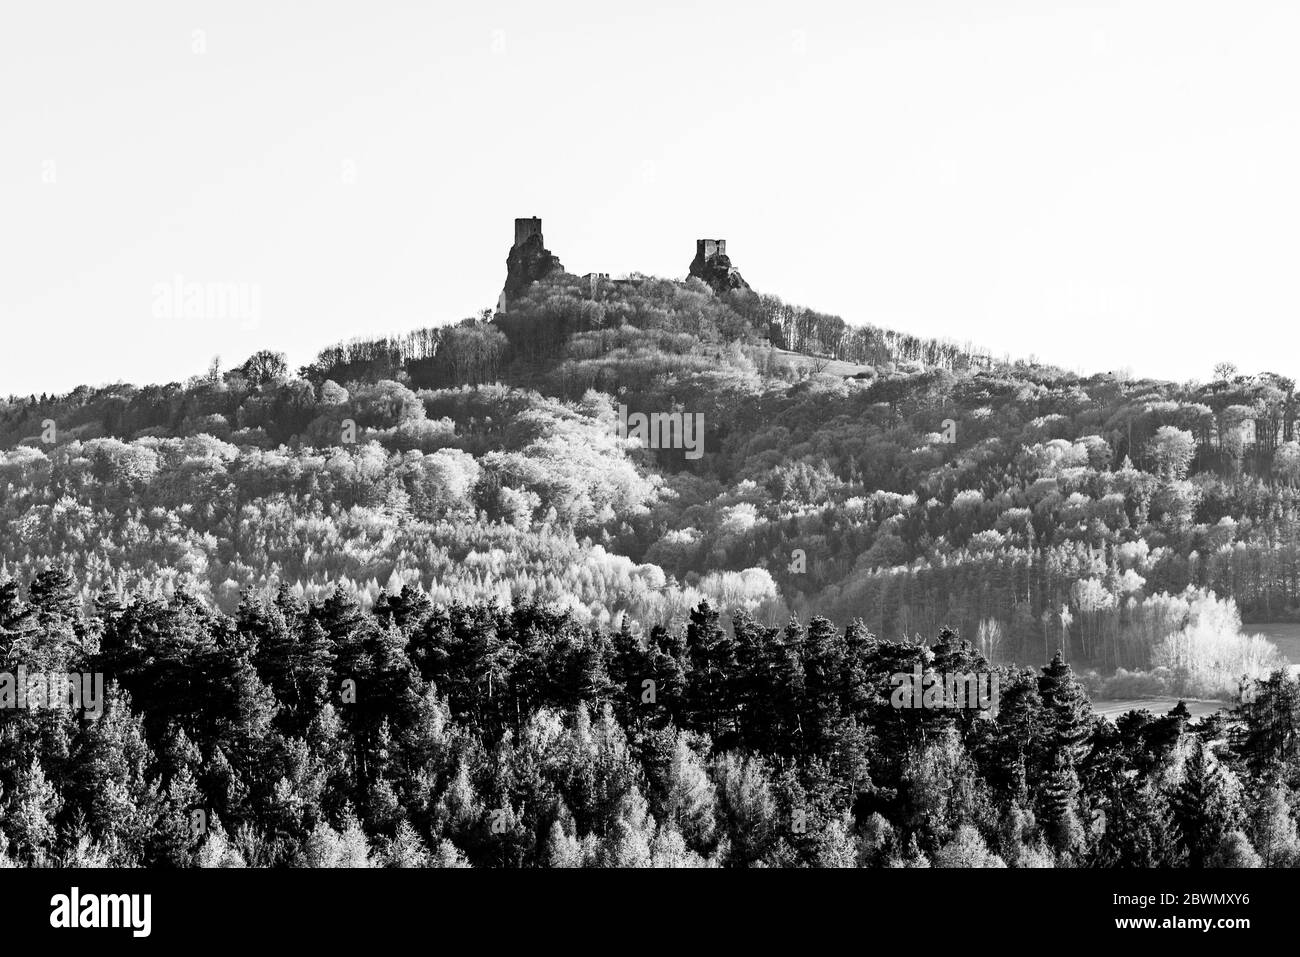 Les ruines du château de Trosky. Deux tours de l'ancien château médiéval sur la colline. Paysage de Paradis tchèque: Cesky raj, République tchèque. Noir et blanc Banque D'Images